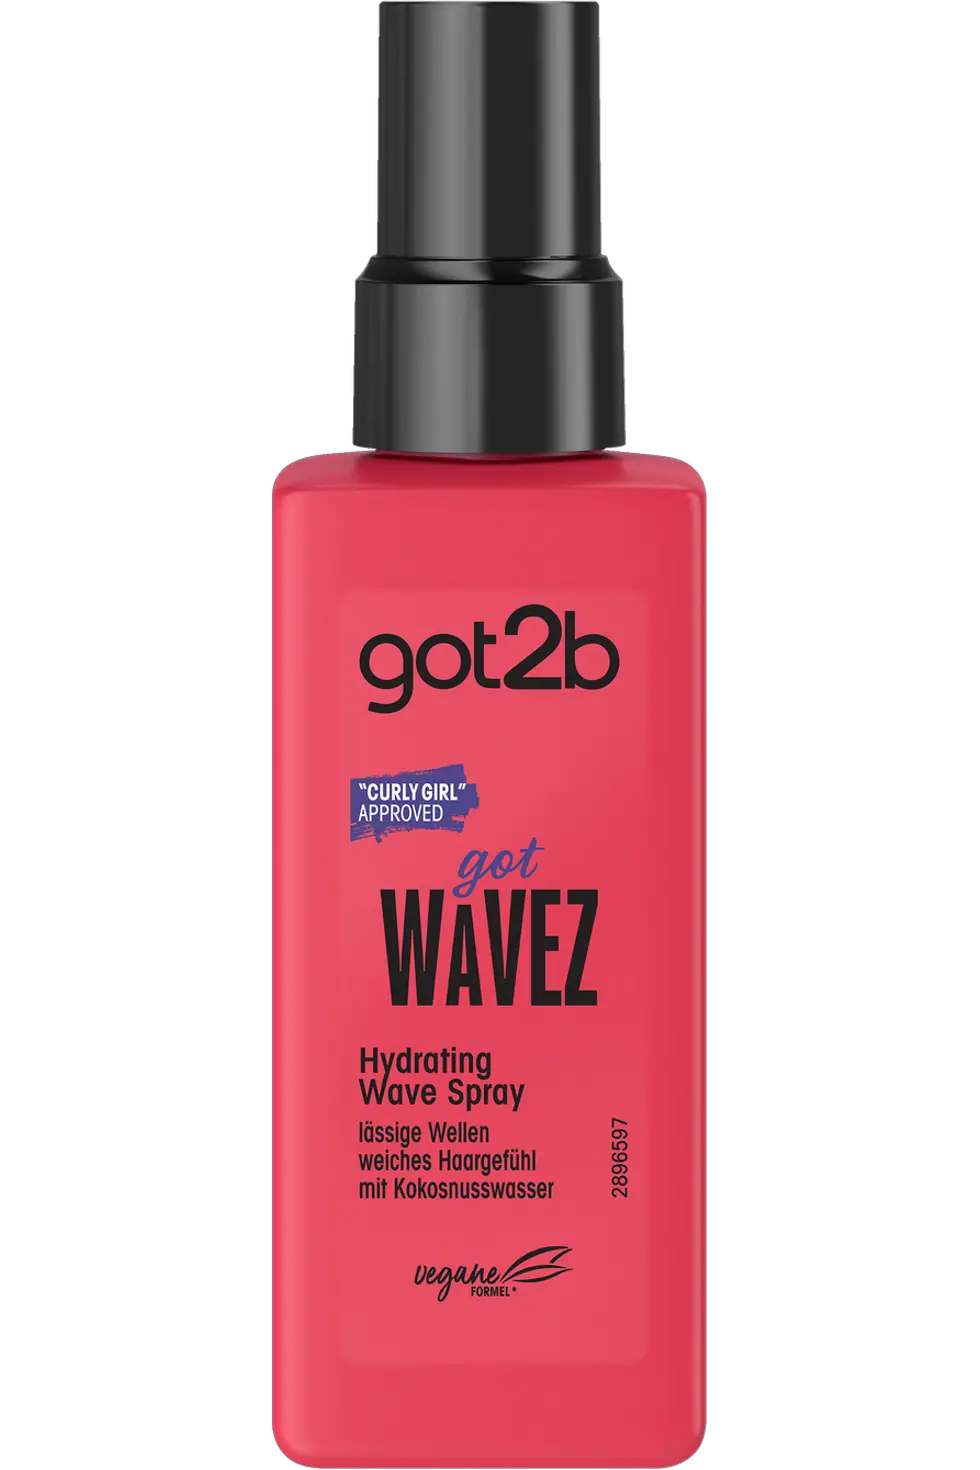 
got2b Hydrating Wave Spray got Wavez